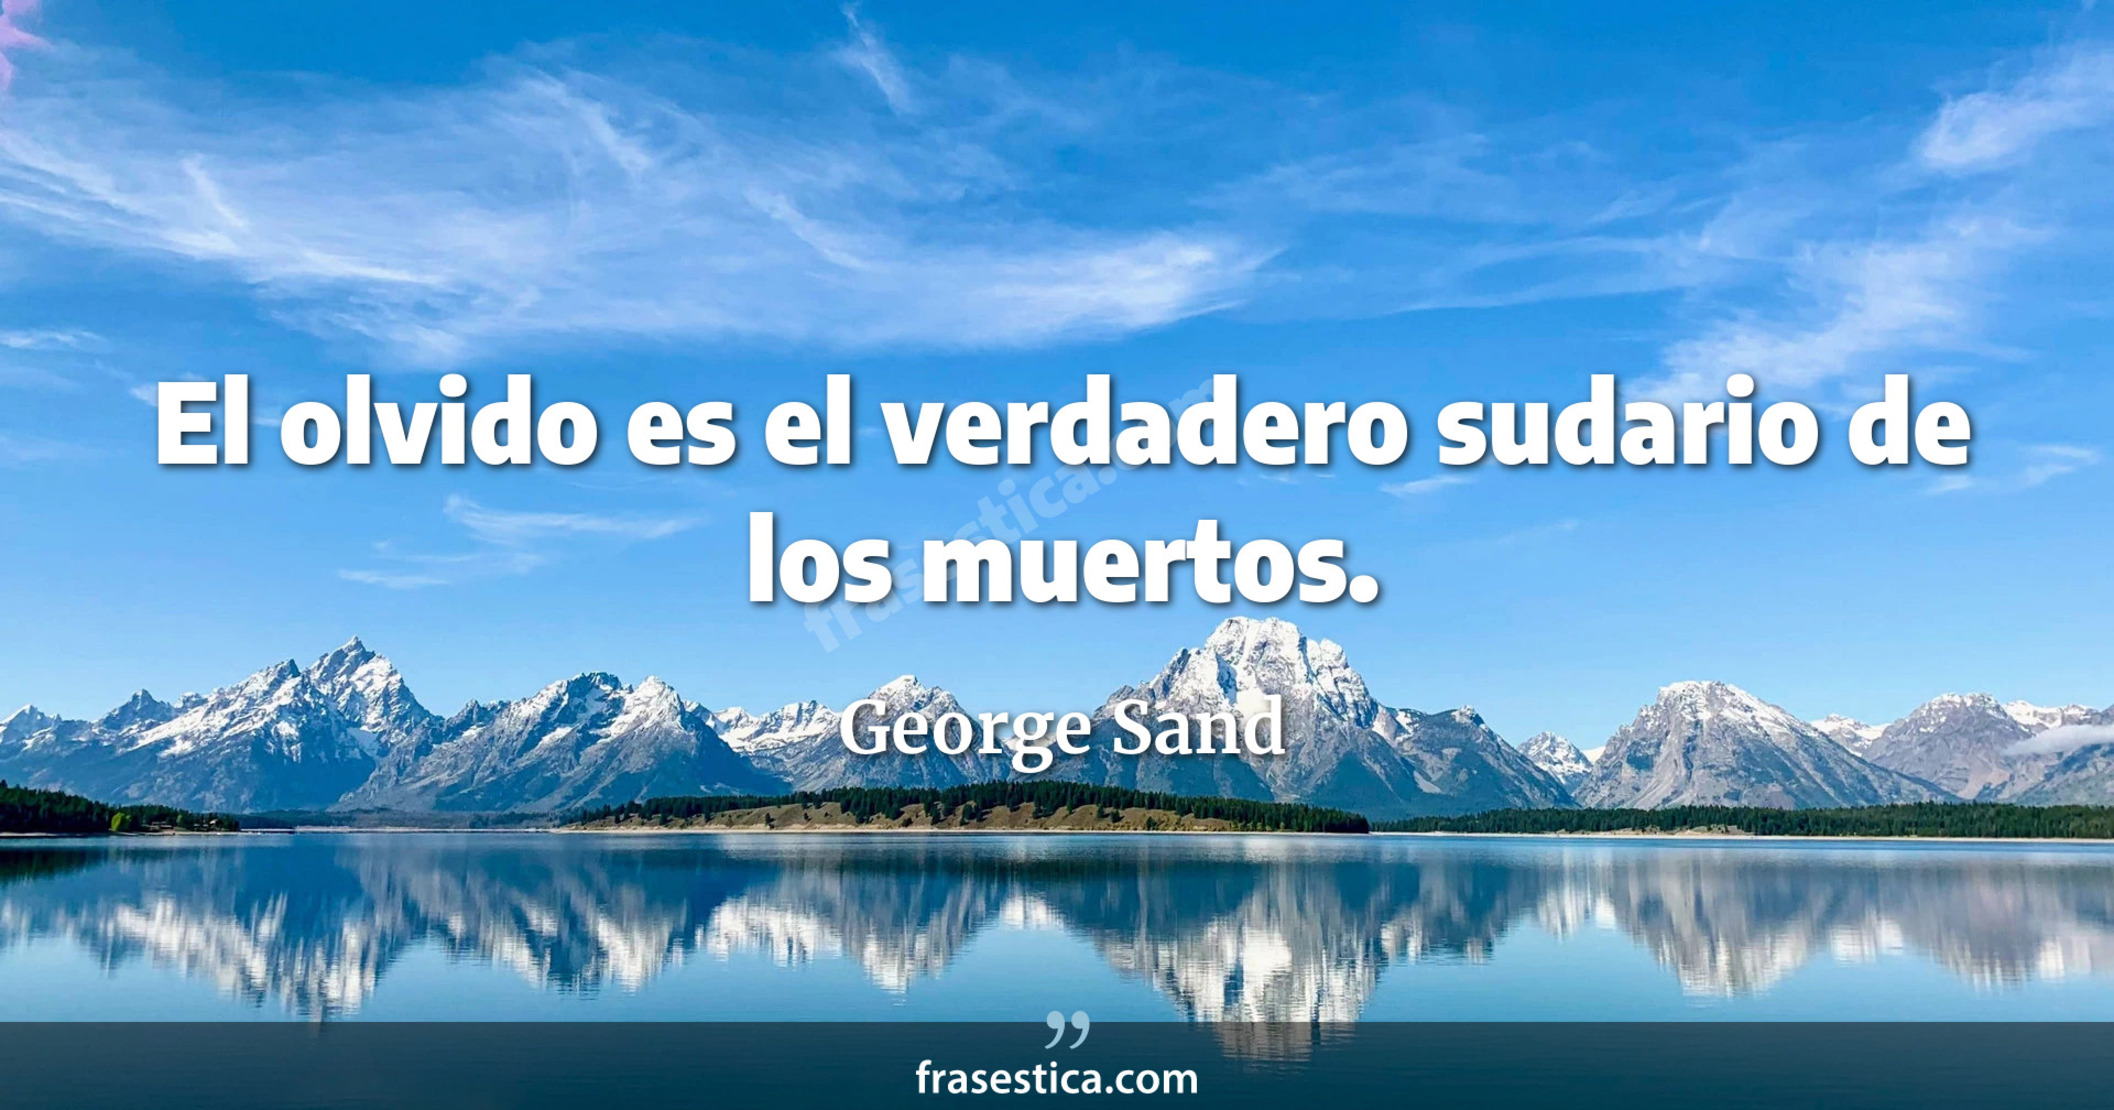 El olvido es el verdadero sudario de los muertos. - George Sand